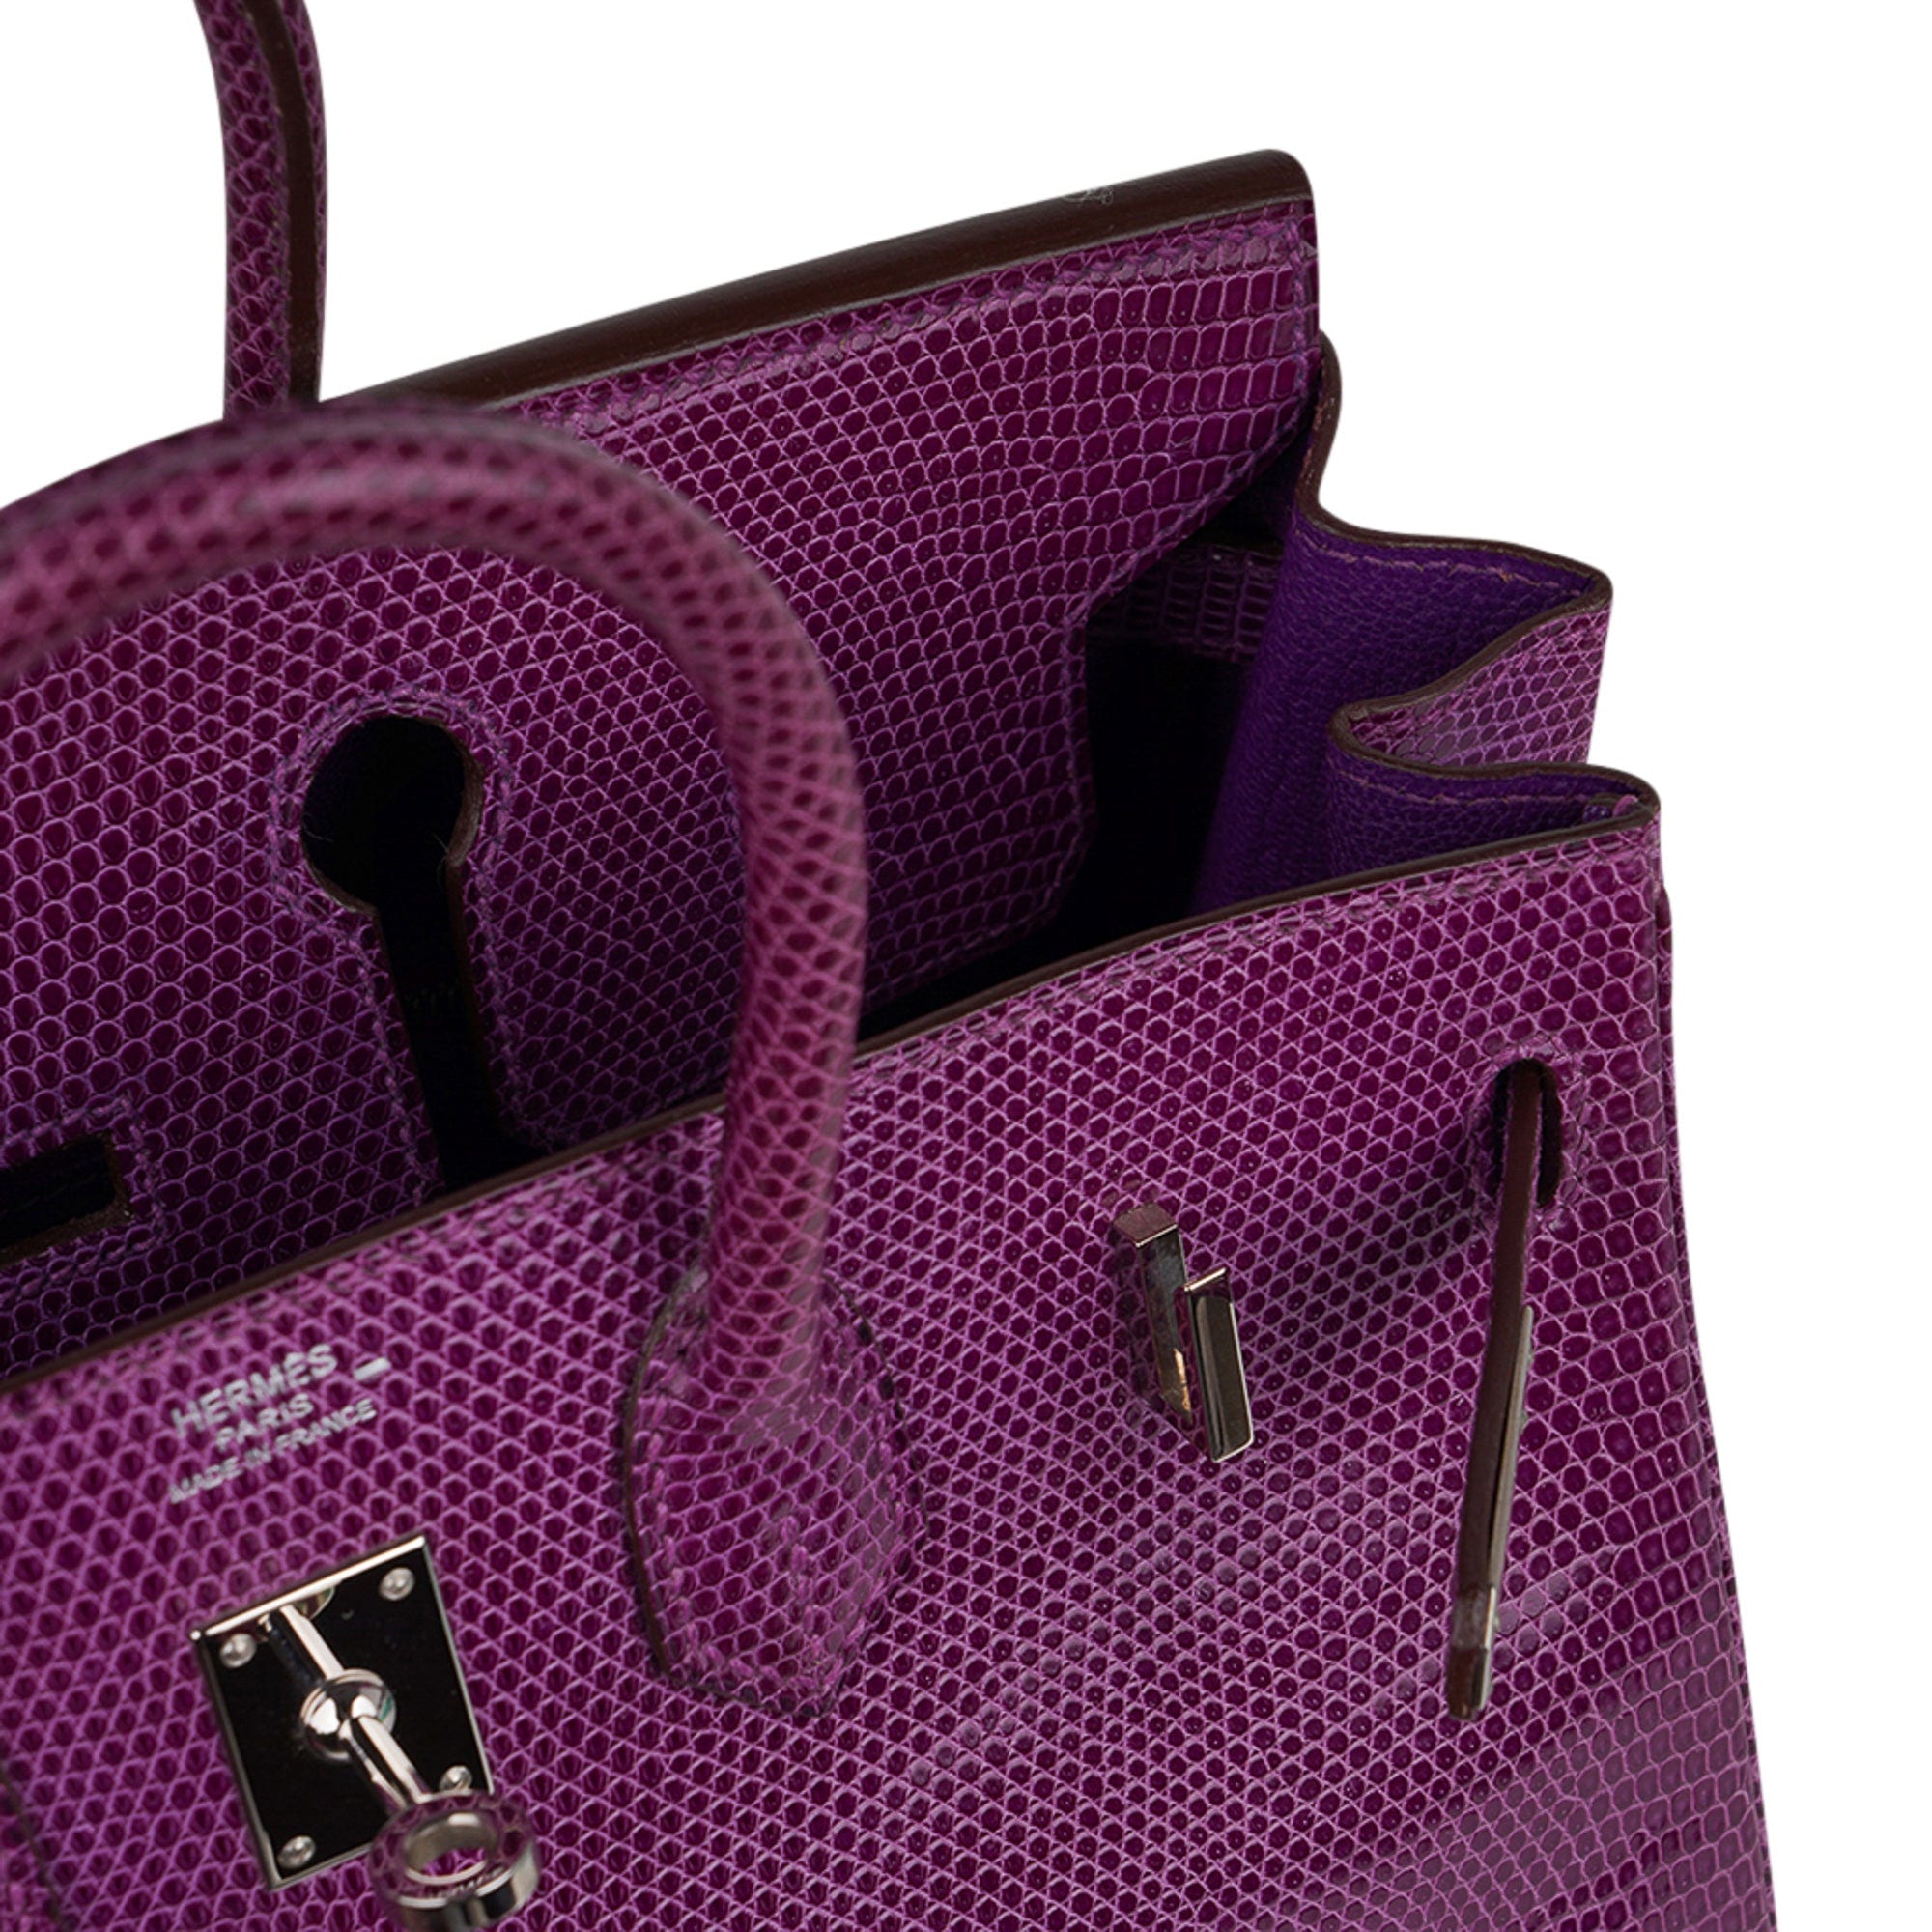 Hermes, Bags, Authentic 35 Hermes Birkin In Ultra Violet